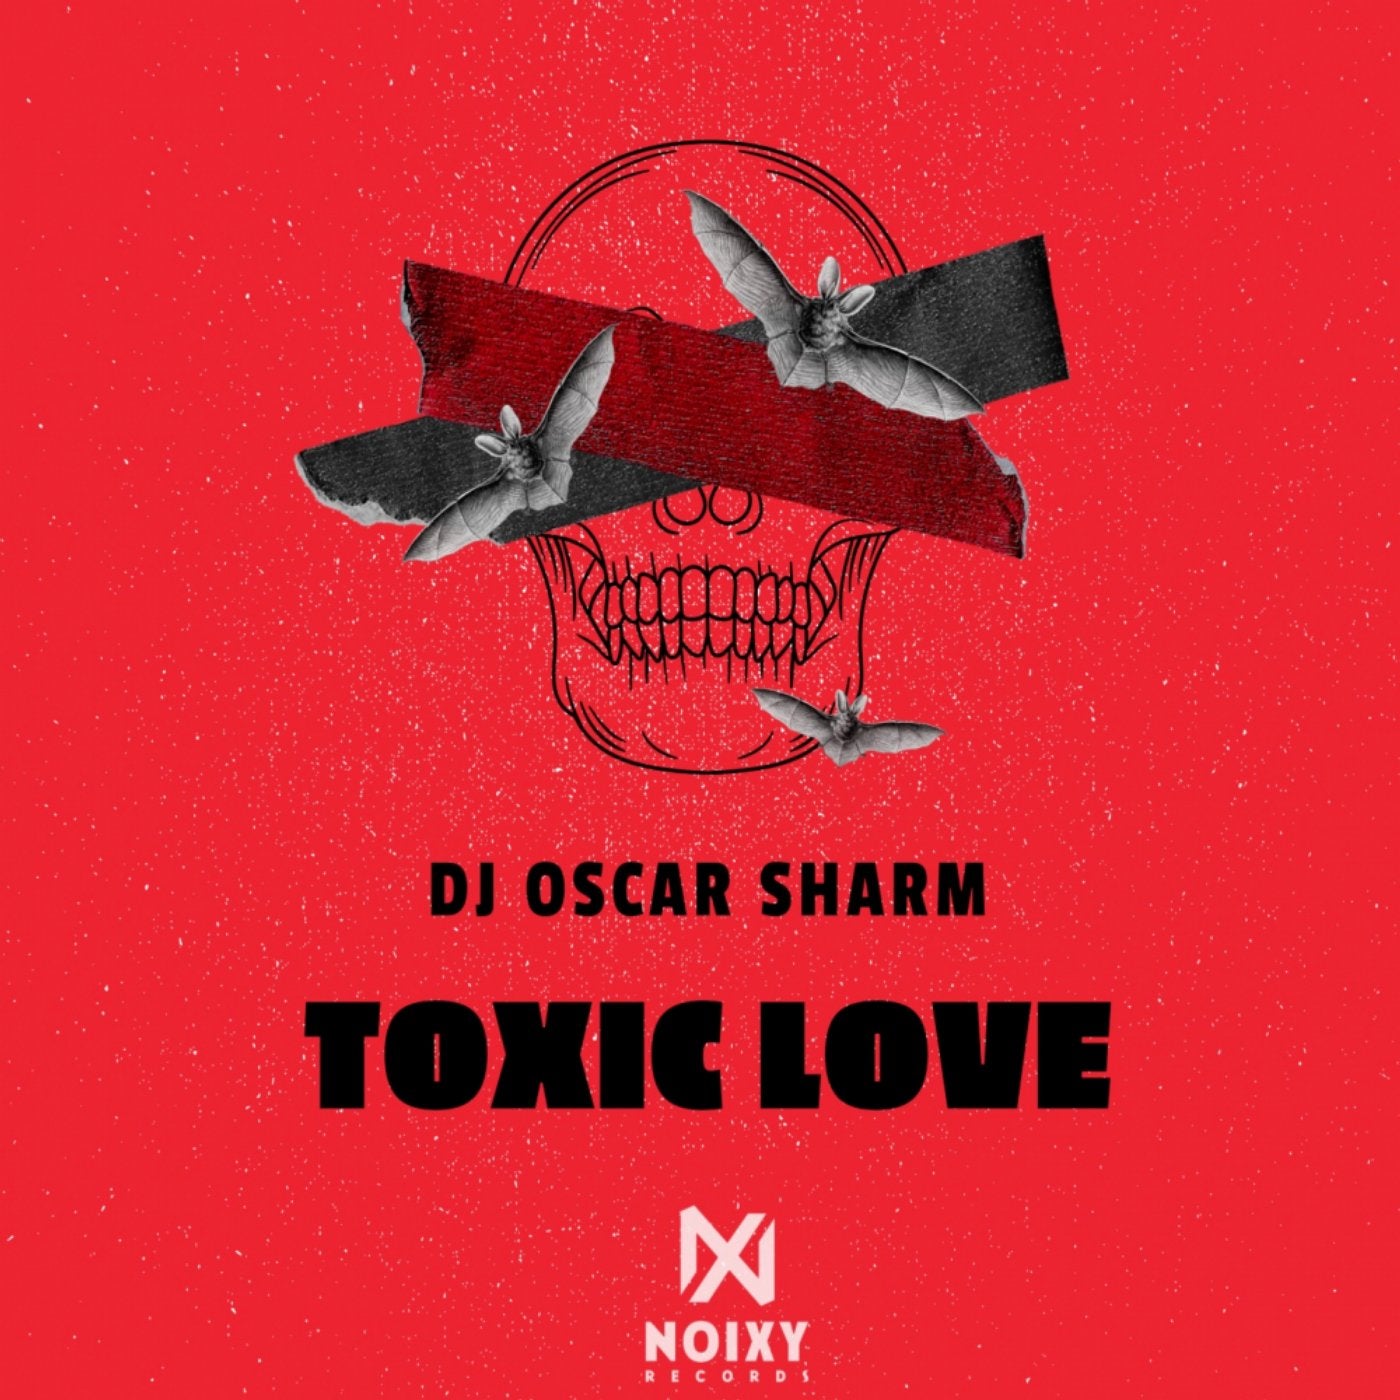 Toxic Love